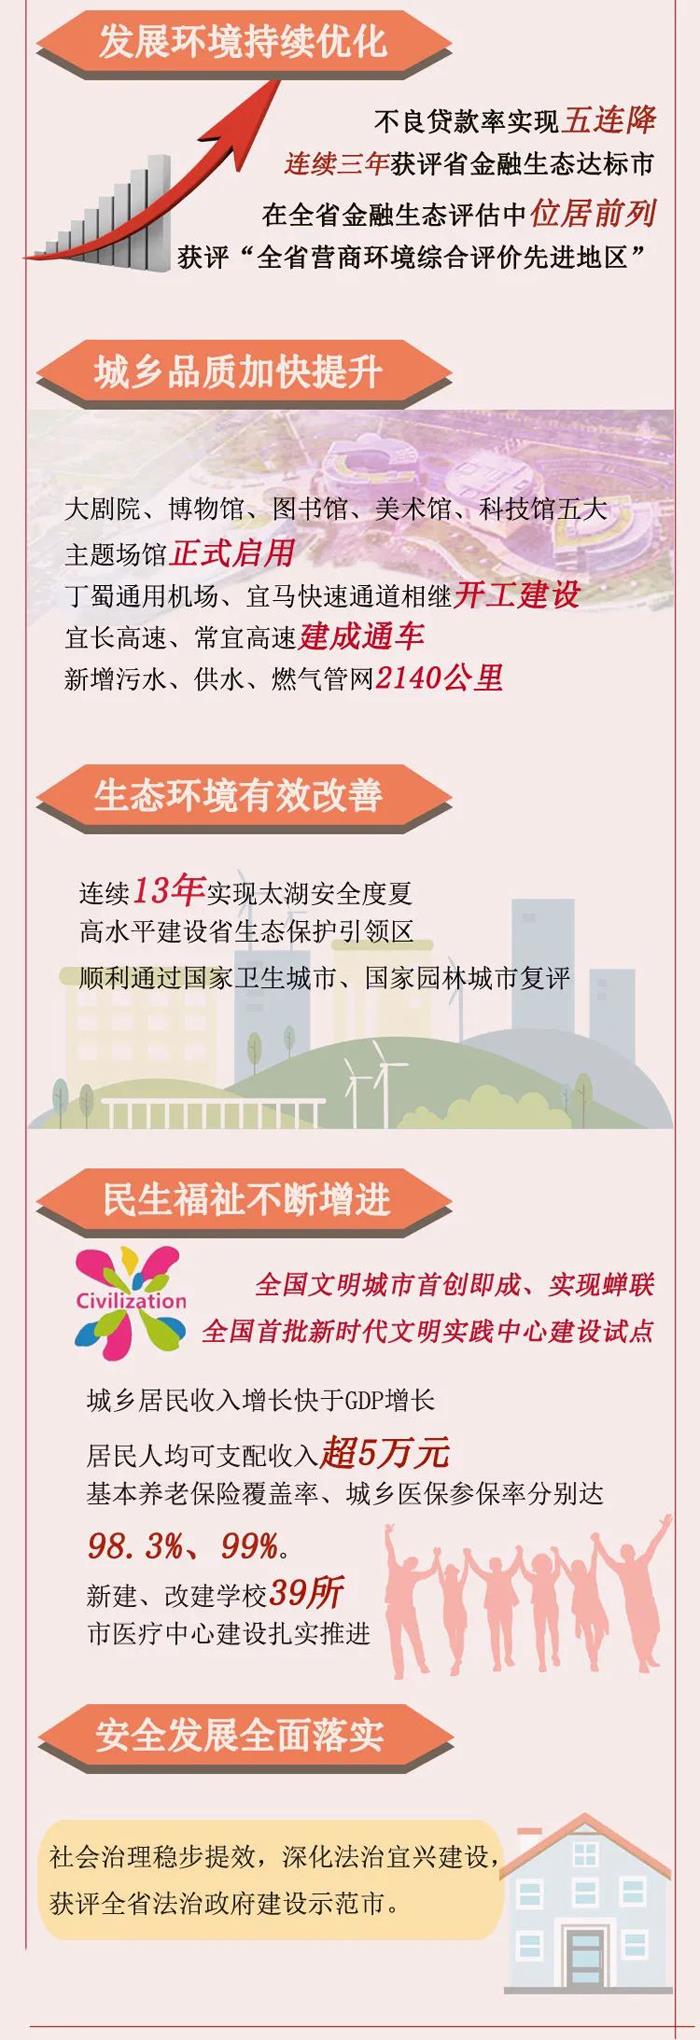 宜兴市国民经济和社会发展第十四个五年规划和二0三五年远景目标纲要